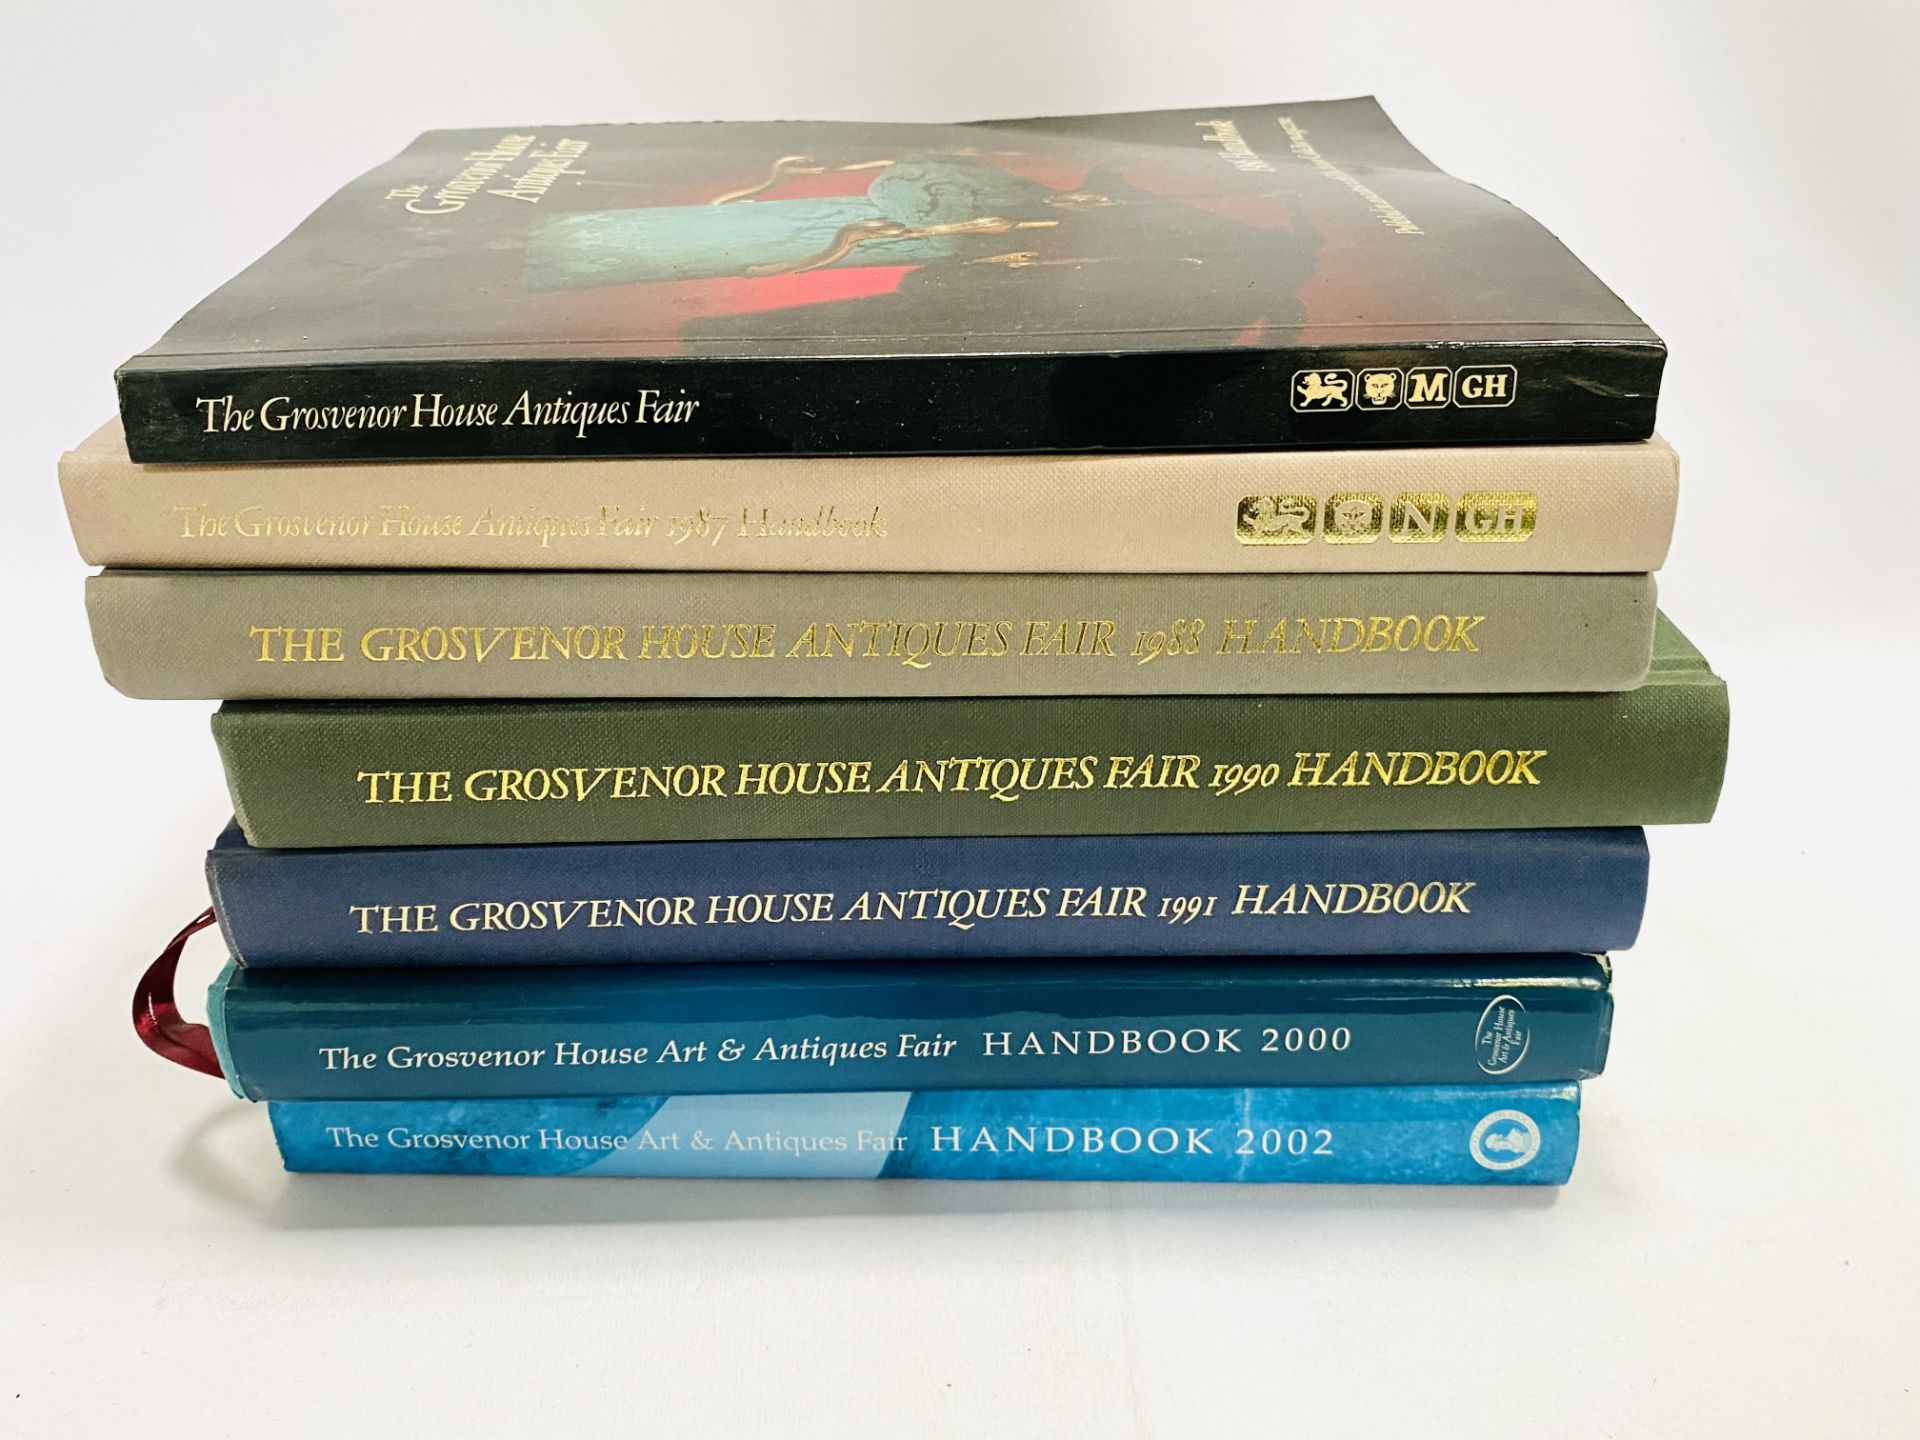 Seven volumes of the Grosvenor House Antique Fair Handbook